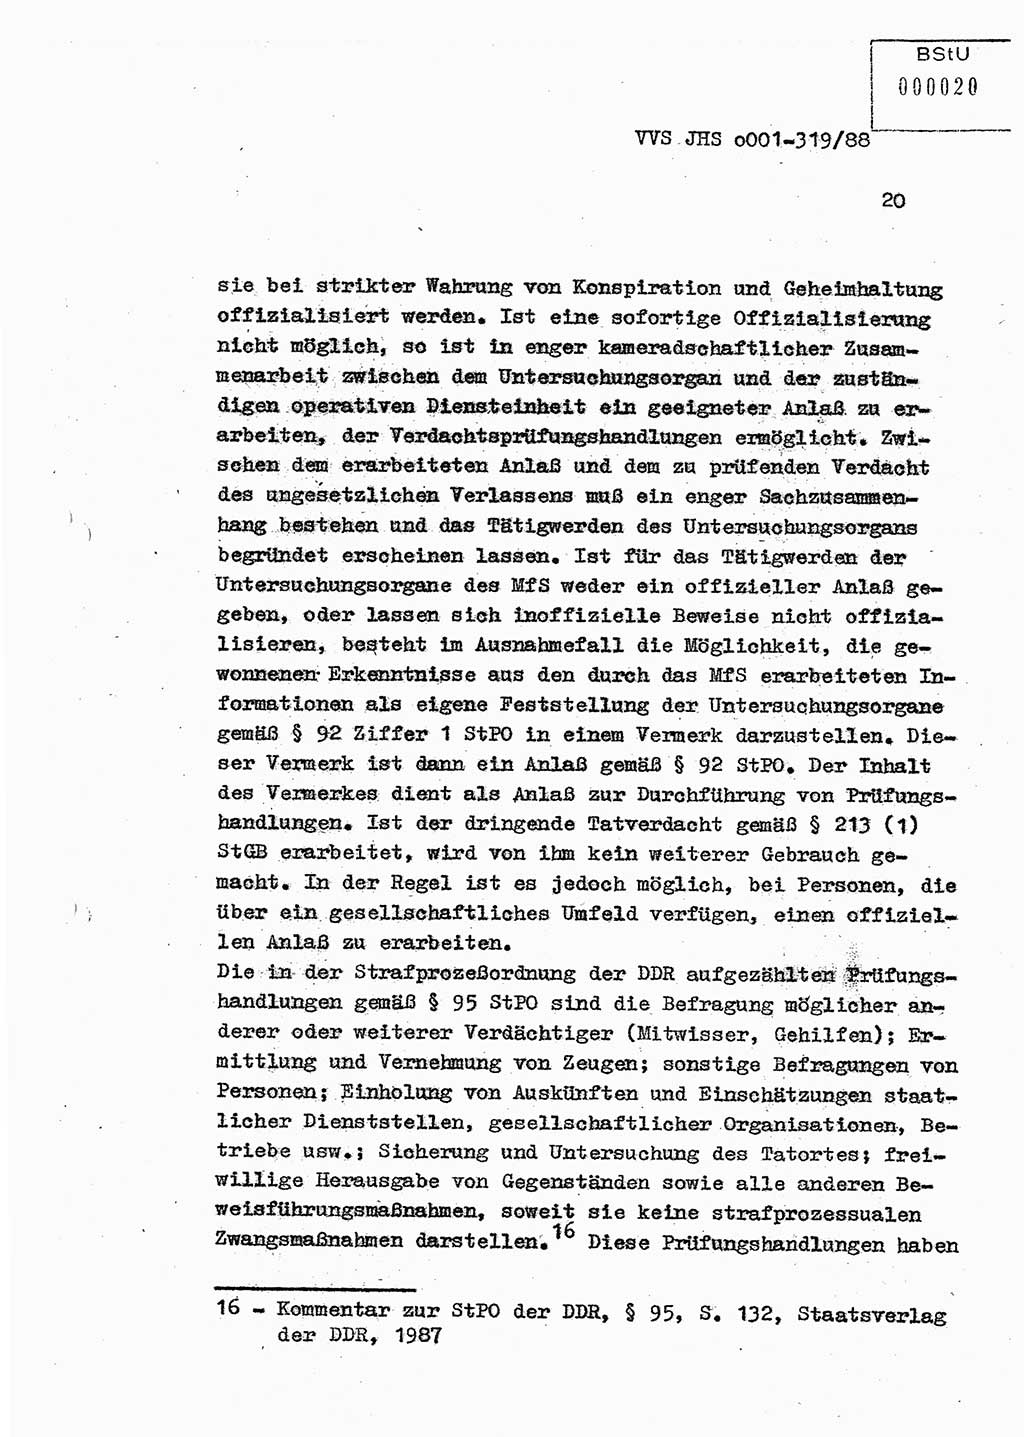 Diplomarbeit Offiziersschüler Holger Zirnstein (HA Ⅸ/9), Ministerium für Staatssicherheit (MfS) [Deutsche Demokratische Republik (DDR)], Juristische Hochschule (JHS), Vertrauliche Verschlußsache (VVS) o001-319/88, Potsdam 1988, Blatt 20 (Dipl.-Arb. MfS DDR JHS VVS o001-319/88 1988, Bl. 20)